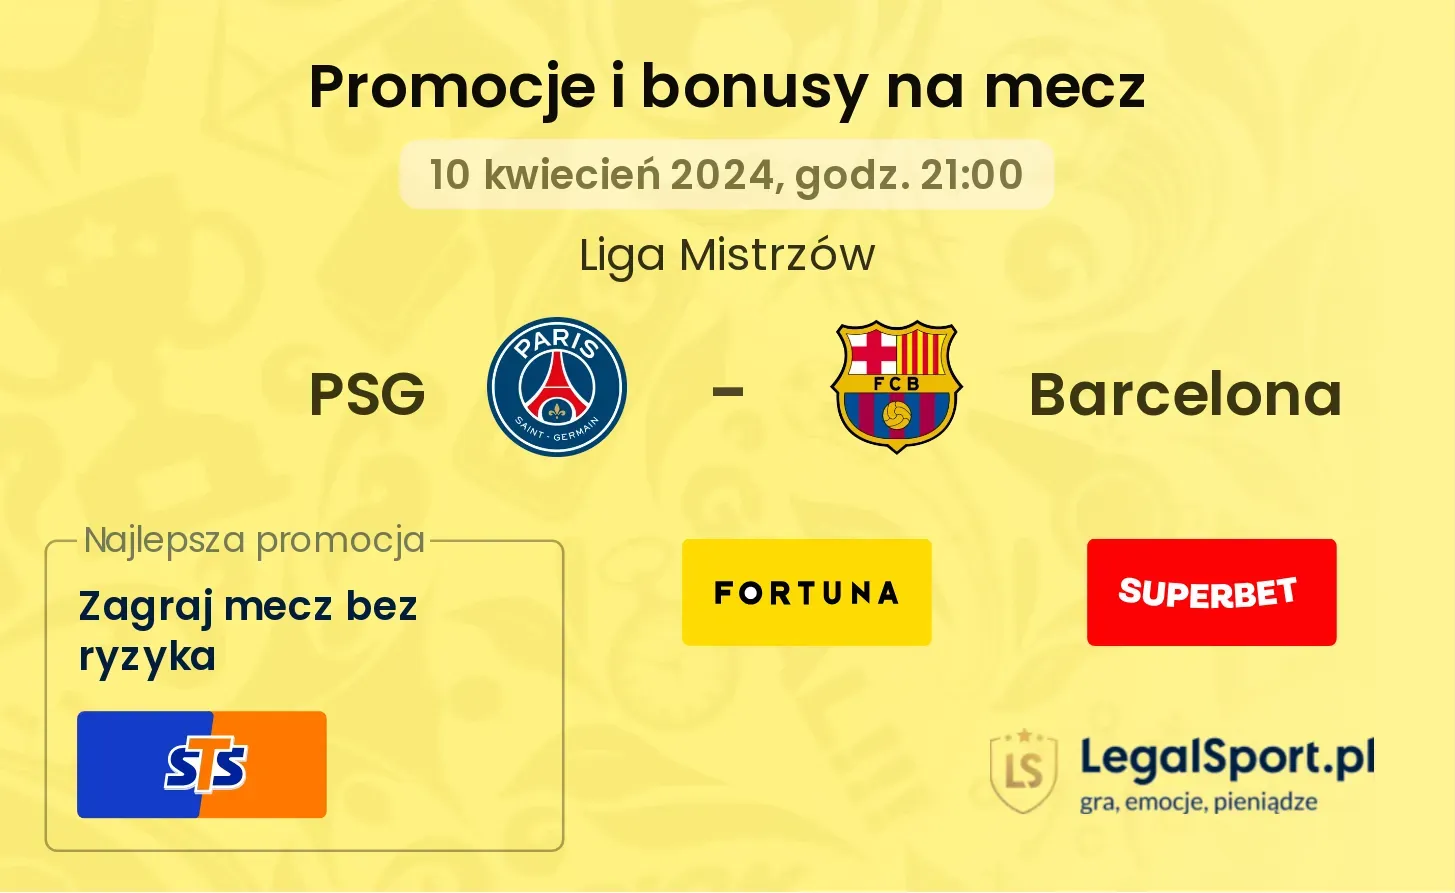 PSG - Barcelona promocje bonusy na mecz